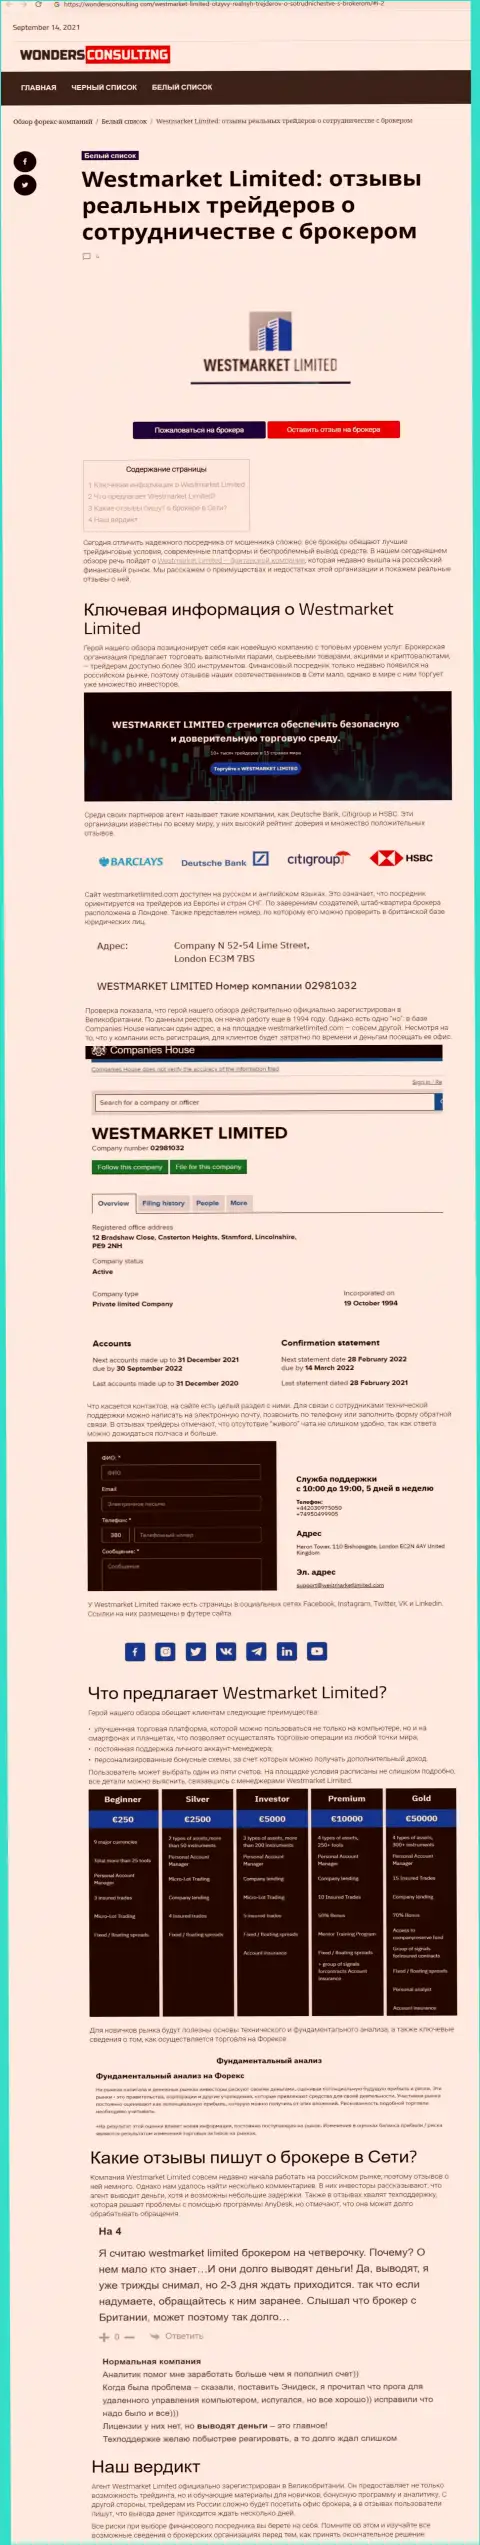 Публикация о форекс брокерской организации WestMarket Limited на информационном ресурсе вондерконсалтинг ком